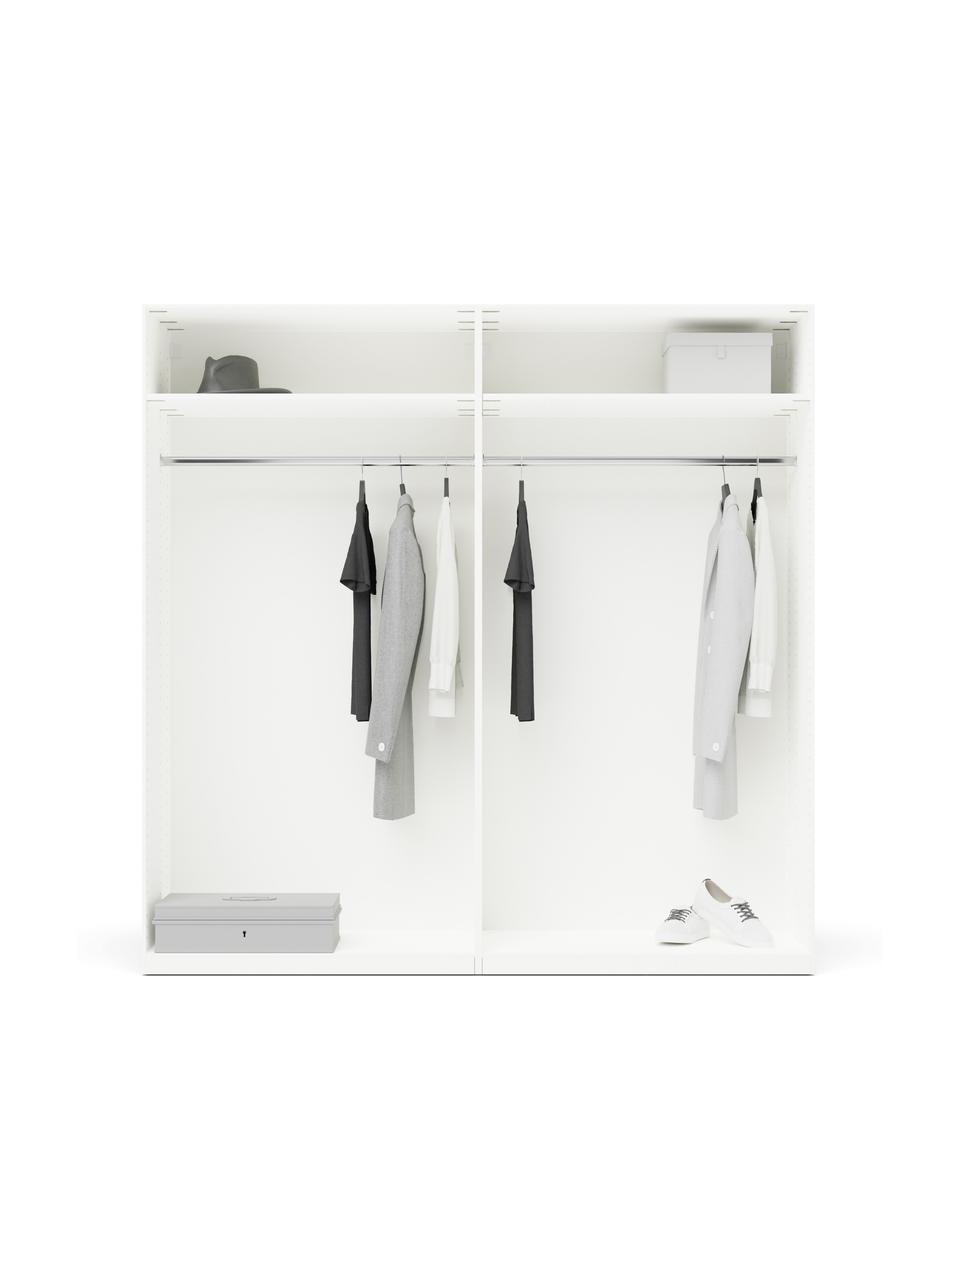 Modulaire draaideurkast Leon in wit, 200 cm breed, verschillende varianten, Hout, wit, Basis interieur, hoogte 200 cm